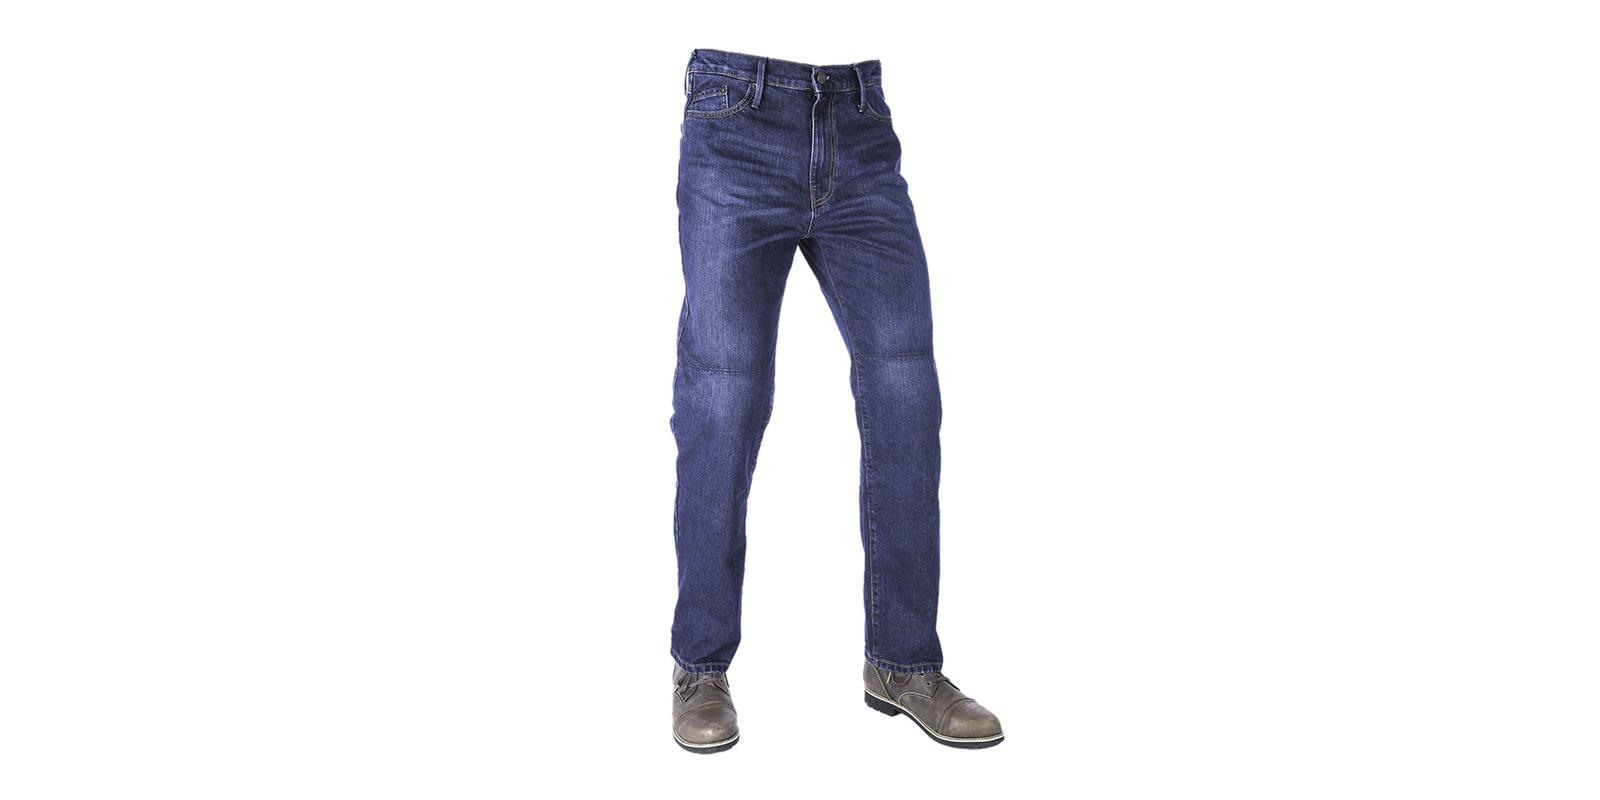 Nohavice Original Approved Jeans Slim fit, pánske (spraná modrá, veľ. 36)